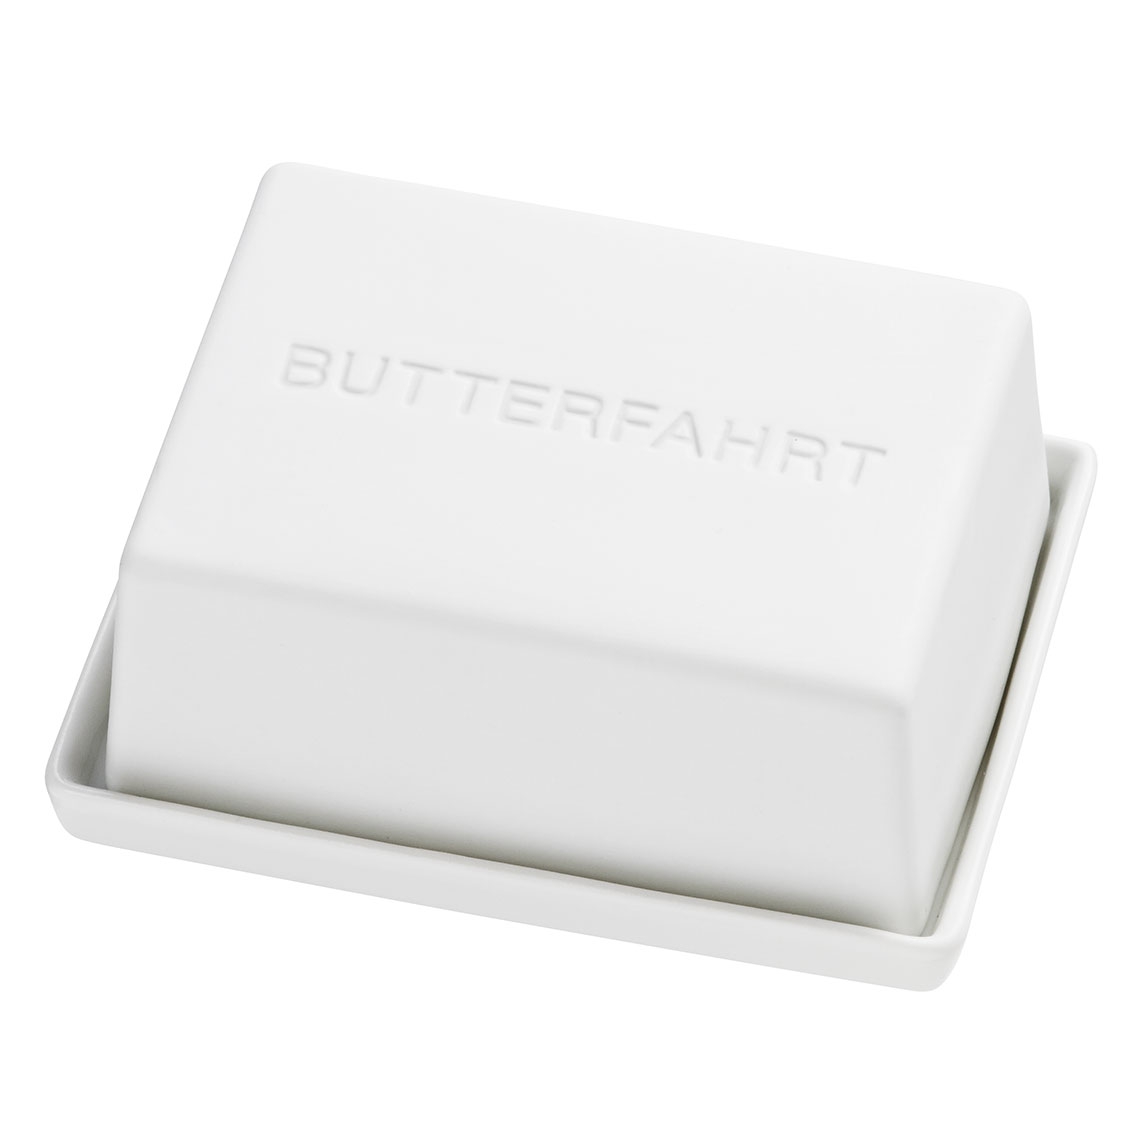 Räder Design - Butterdose "Butterfahrt"